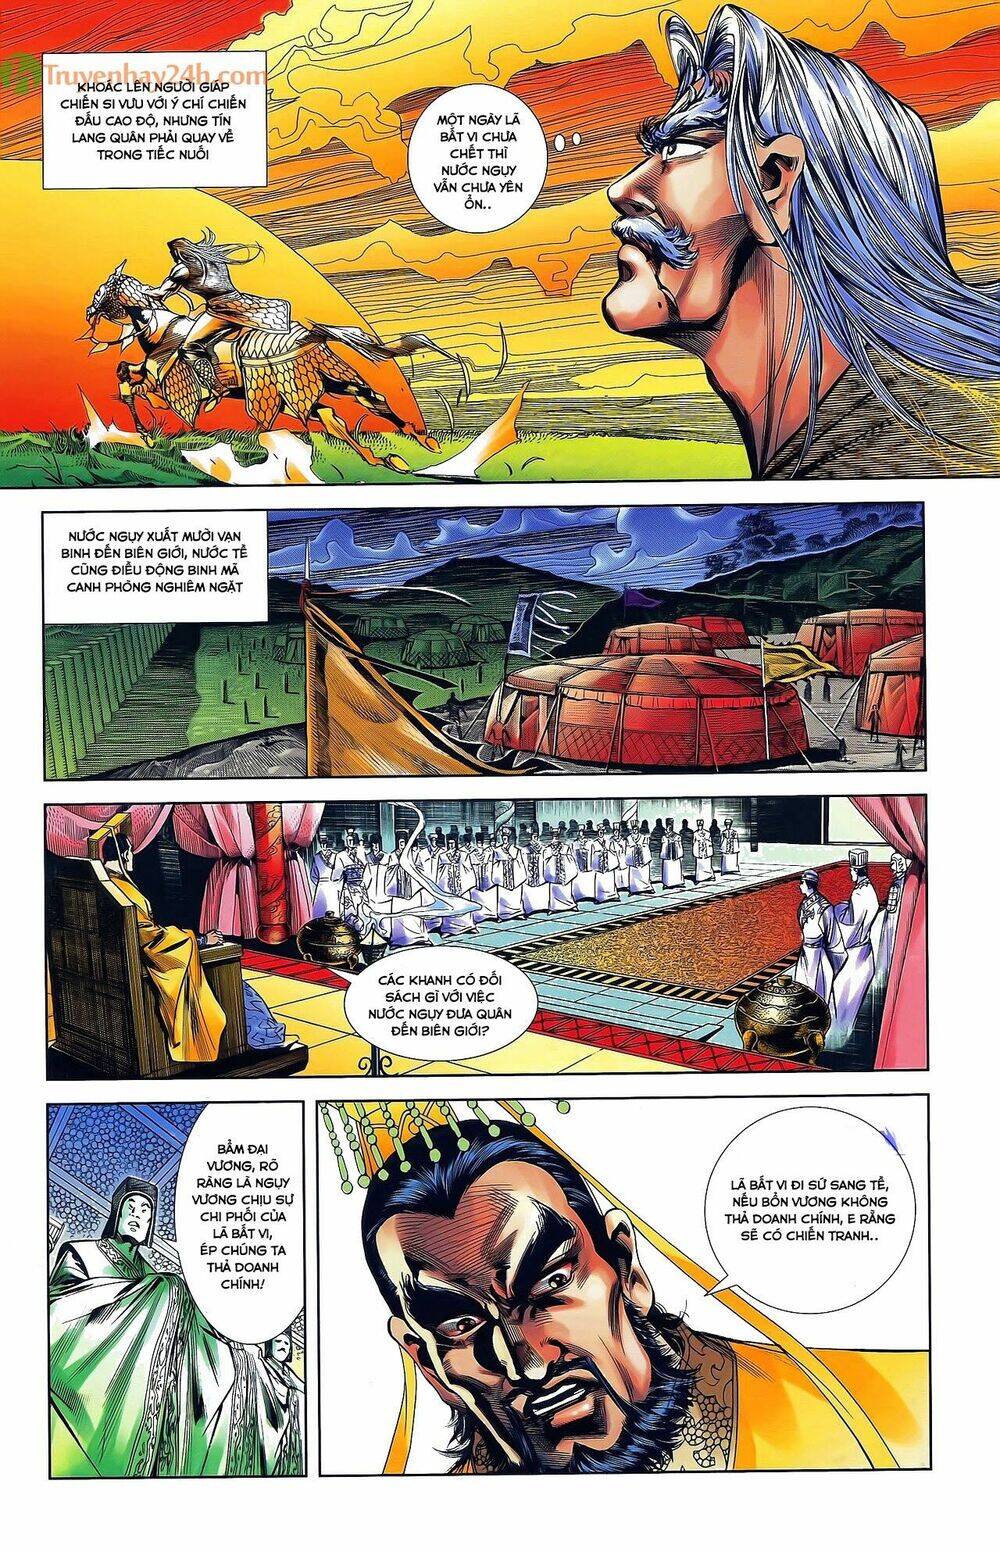 Truyện khủng - Thiên Tử Truyền Kỳ 2 - Tần Vương Doanh Chính